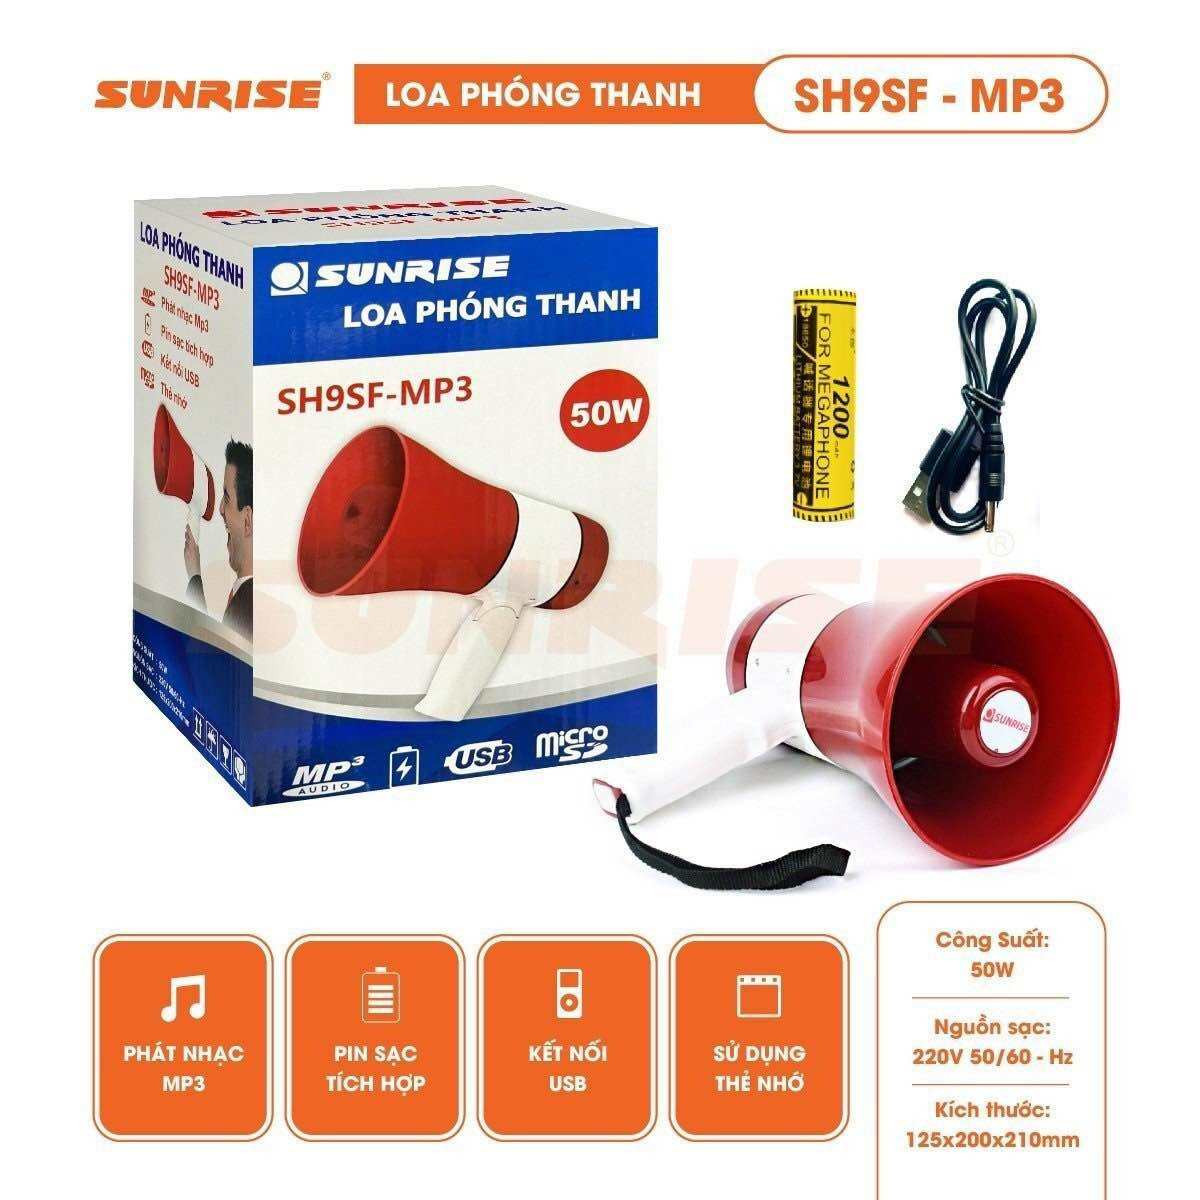 Loa phóng thanh công suất lớn 50W chính hãng Sunrise SH9SF-MP3 có mp3, usb, thu tiếng, kèm pin sạc, còi hú báo động